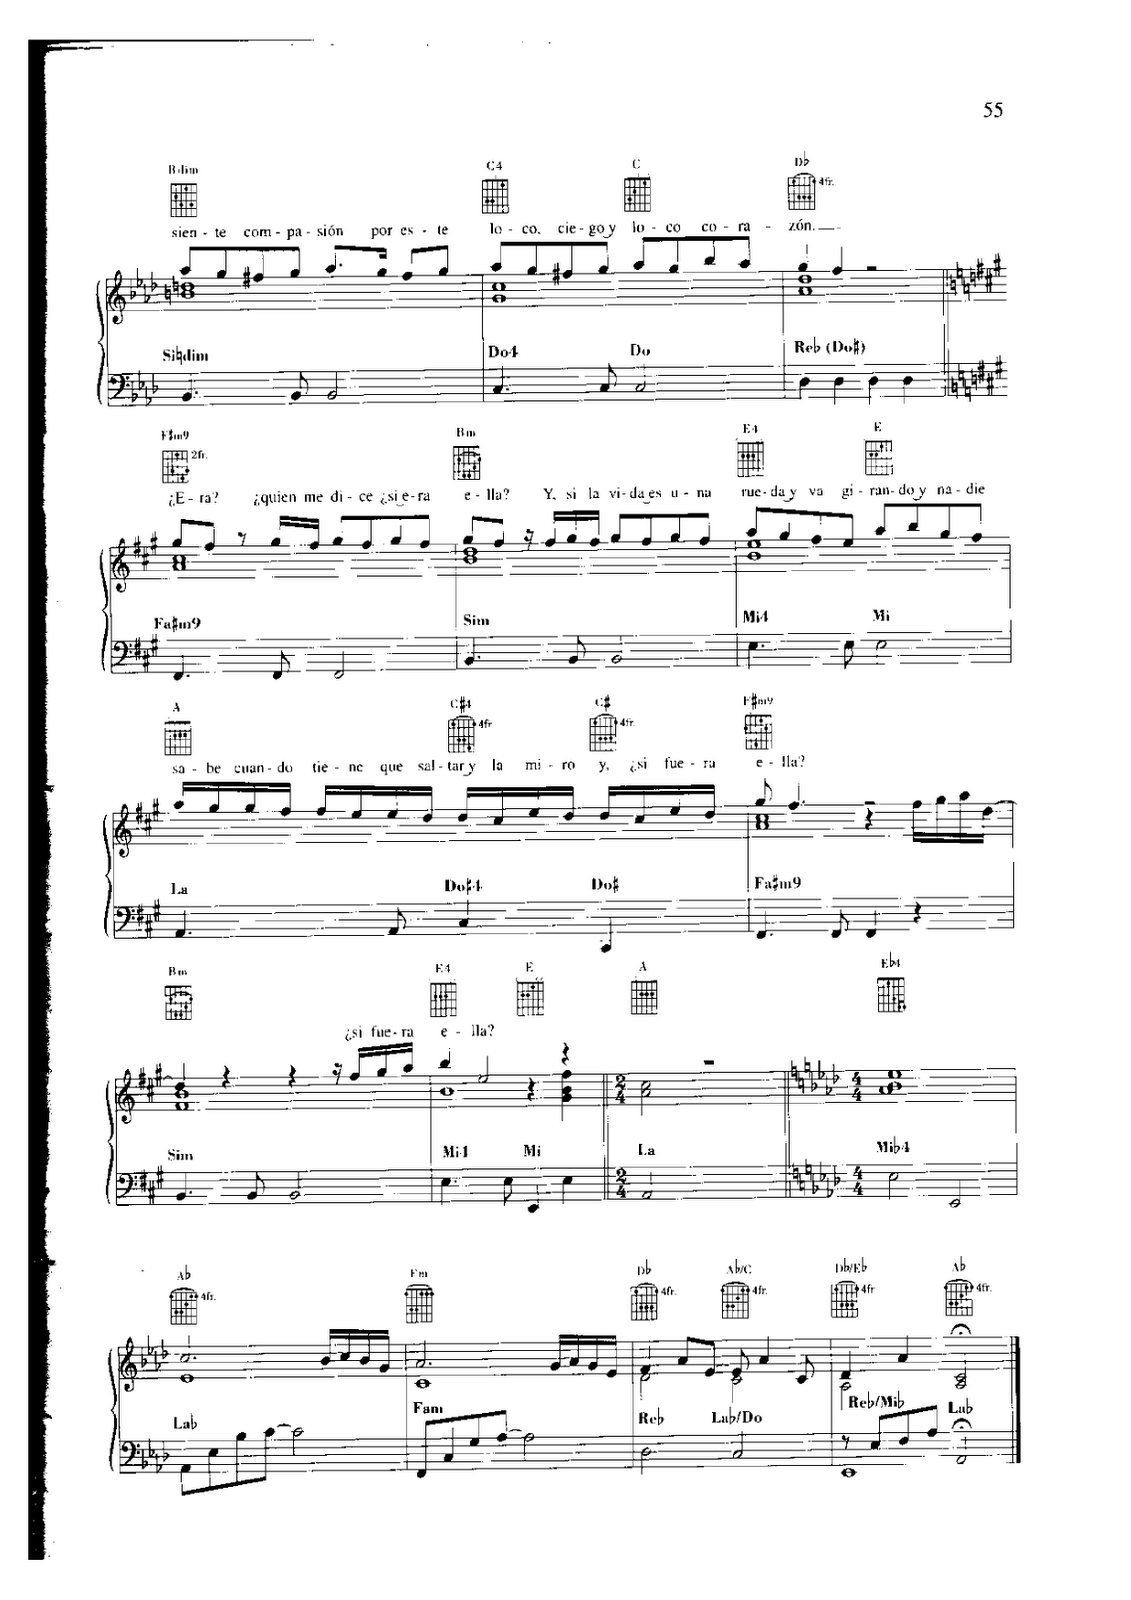 quiero Crudo Defectuoso Partitura de Alejandro Sanz - Y Si Fuera Ella para Piano - Partituras de  piano | Sheet music for piano